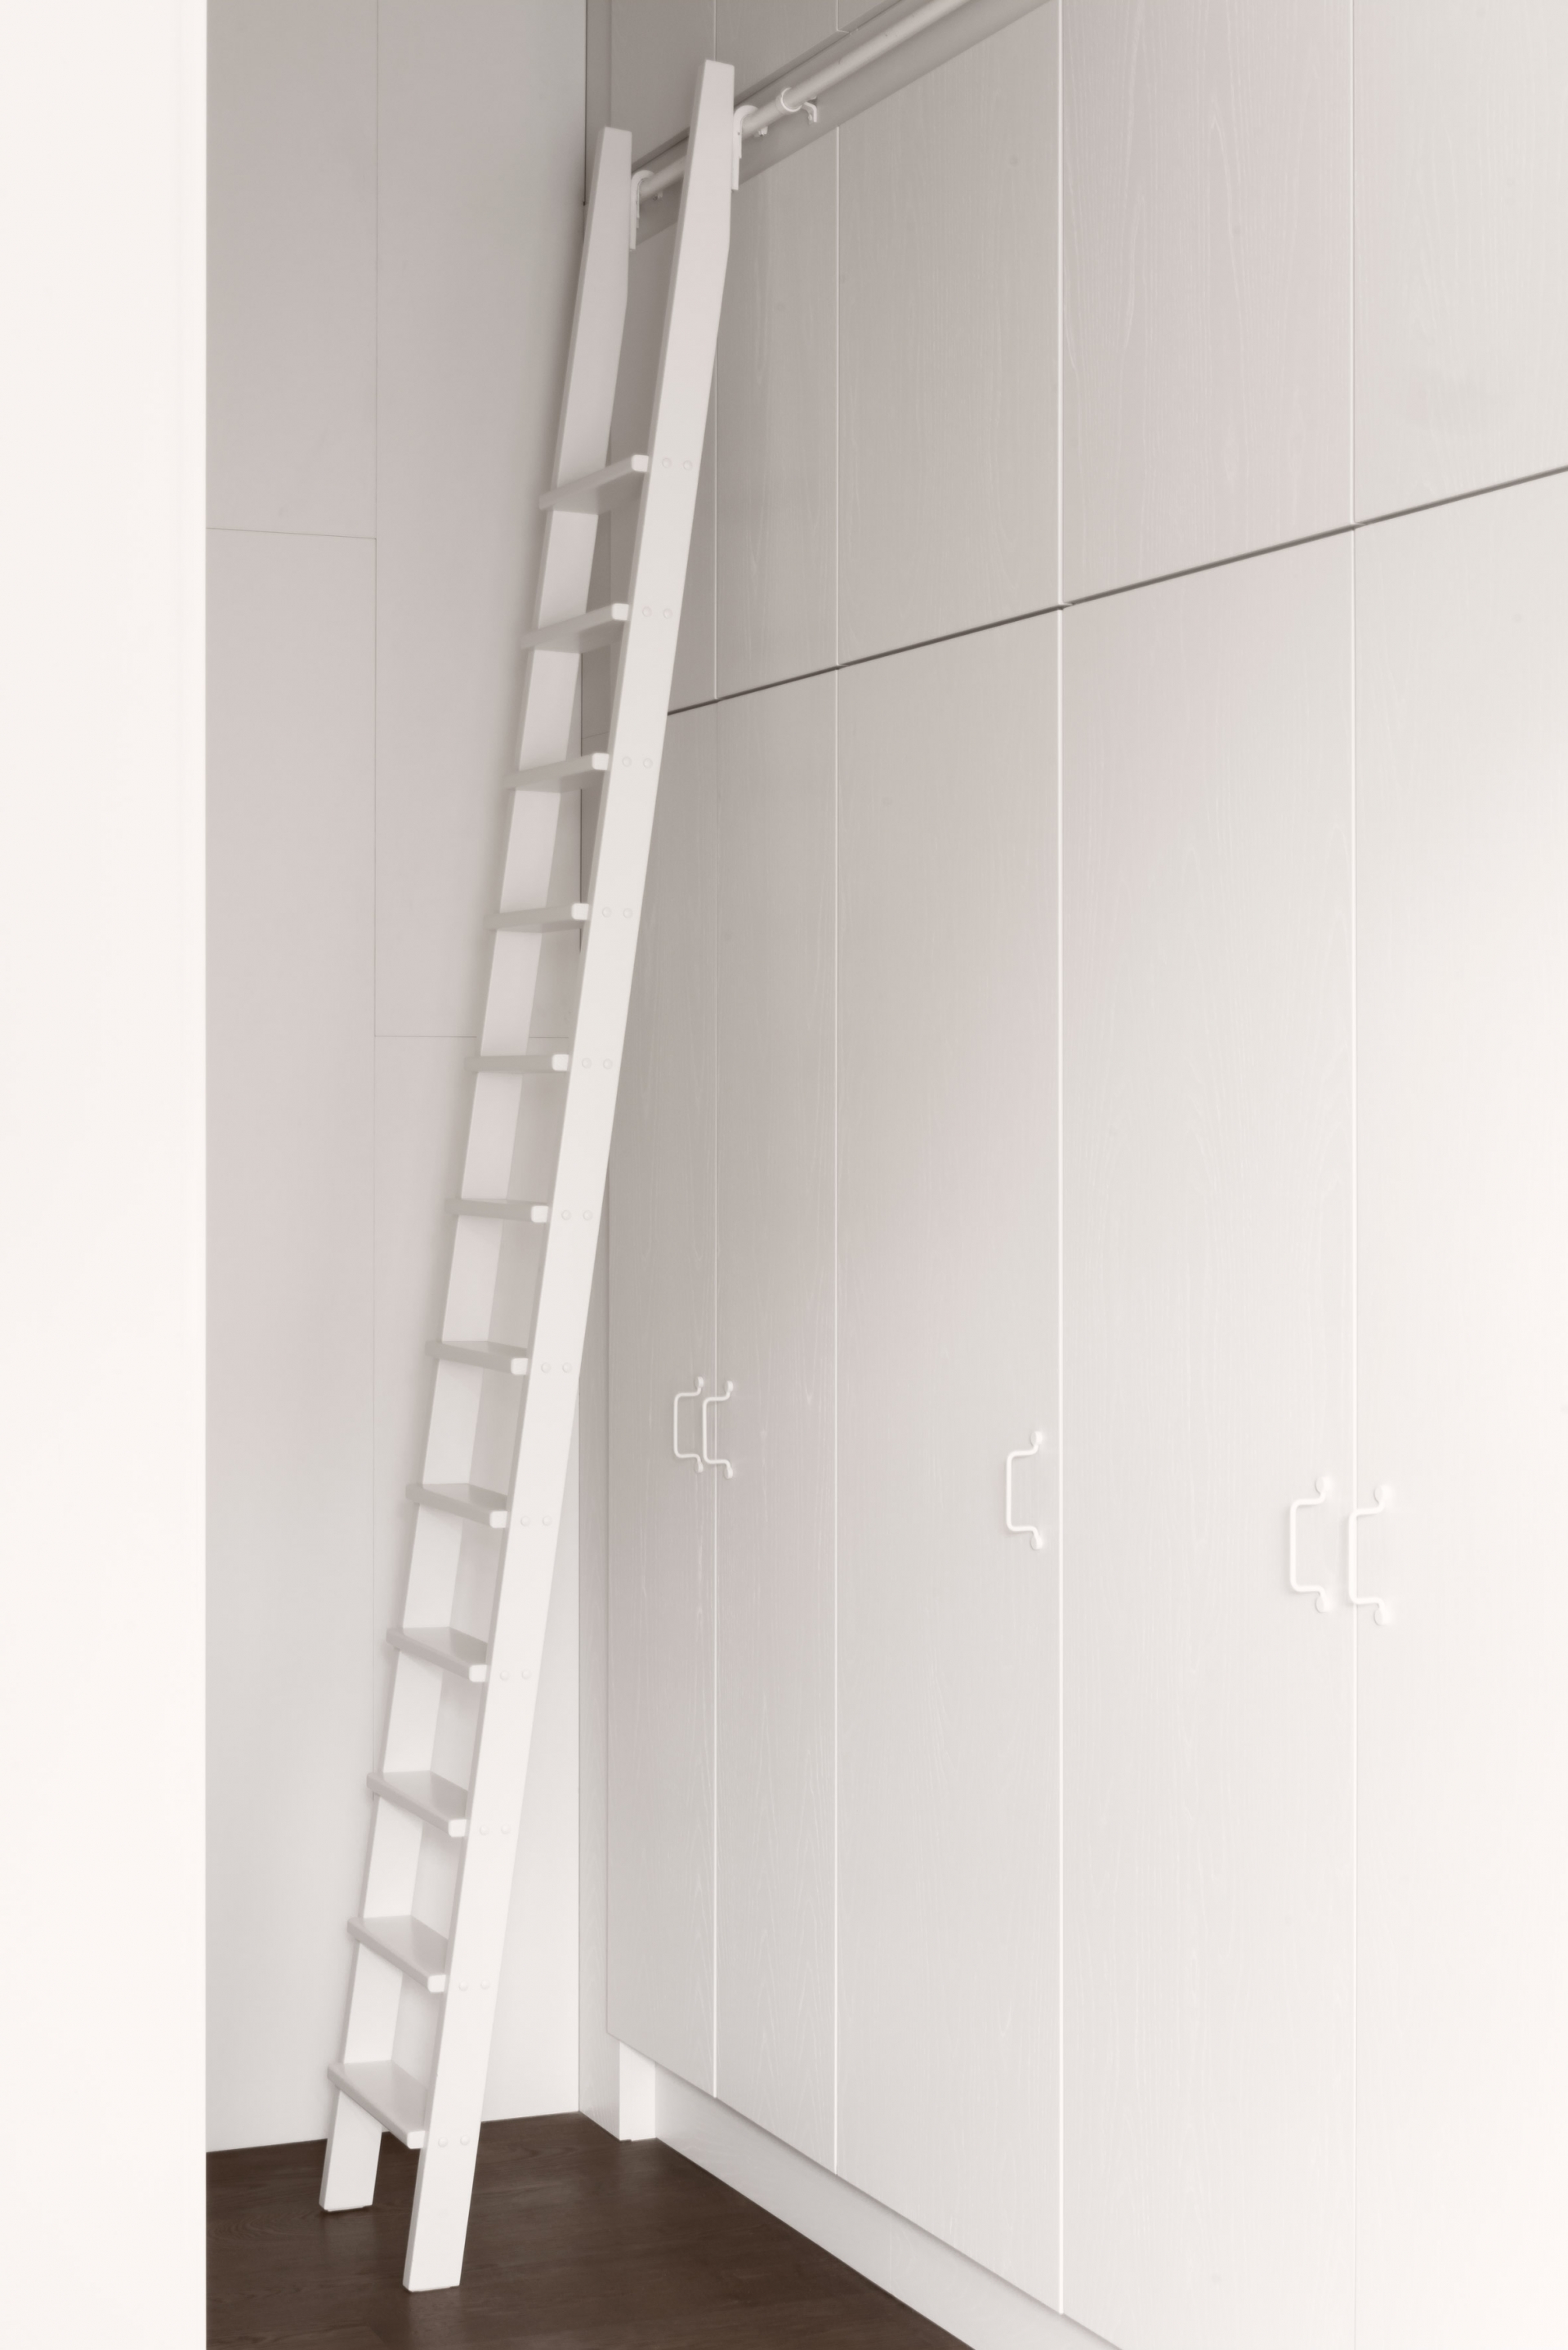 Hệ thống tủ lưu trữ với chiều cao kéo dài từ trần đến sàn nhà được lắp đặt nơi hành lang kết hợp chiếc thang gỗ đồng nhất một màu trắng tinh khôi.